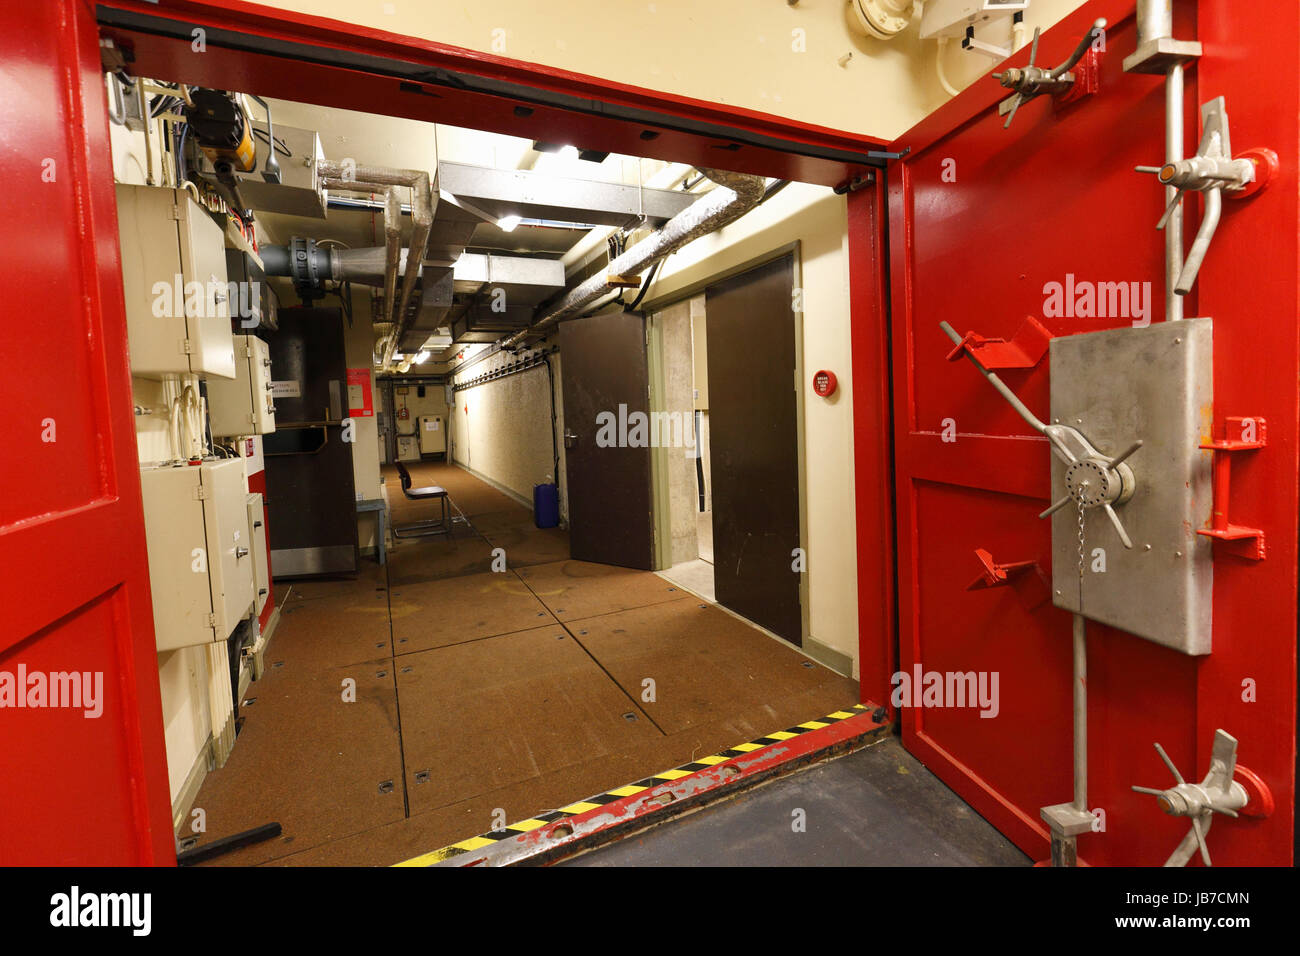 Metal blast rouge porte dans un bunker souterrain. Banque D'Images